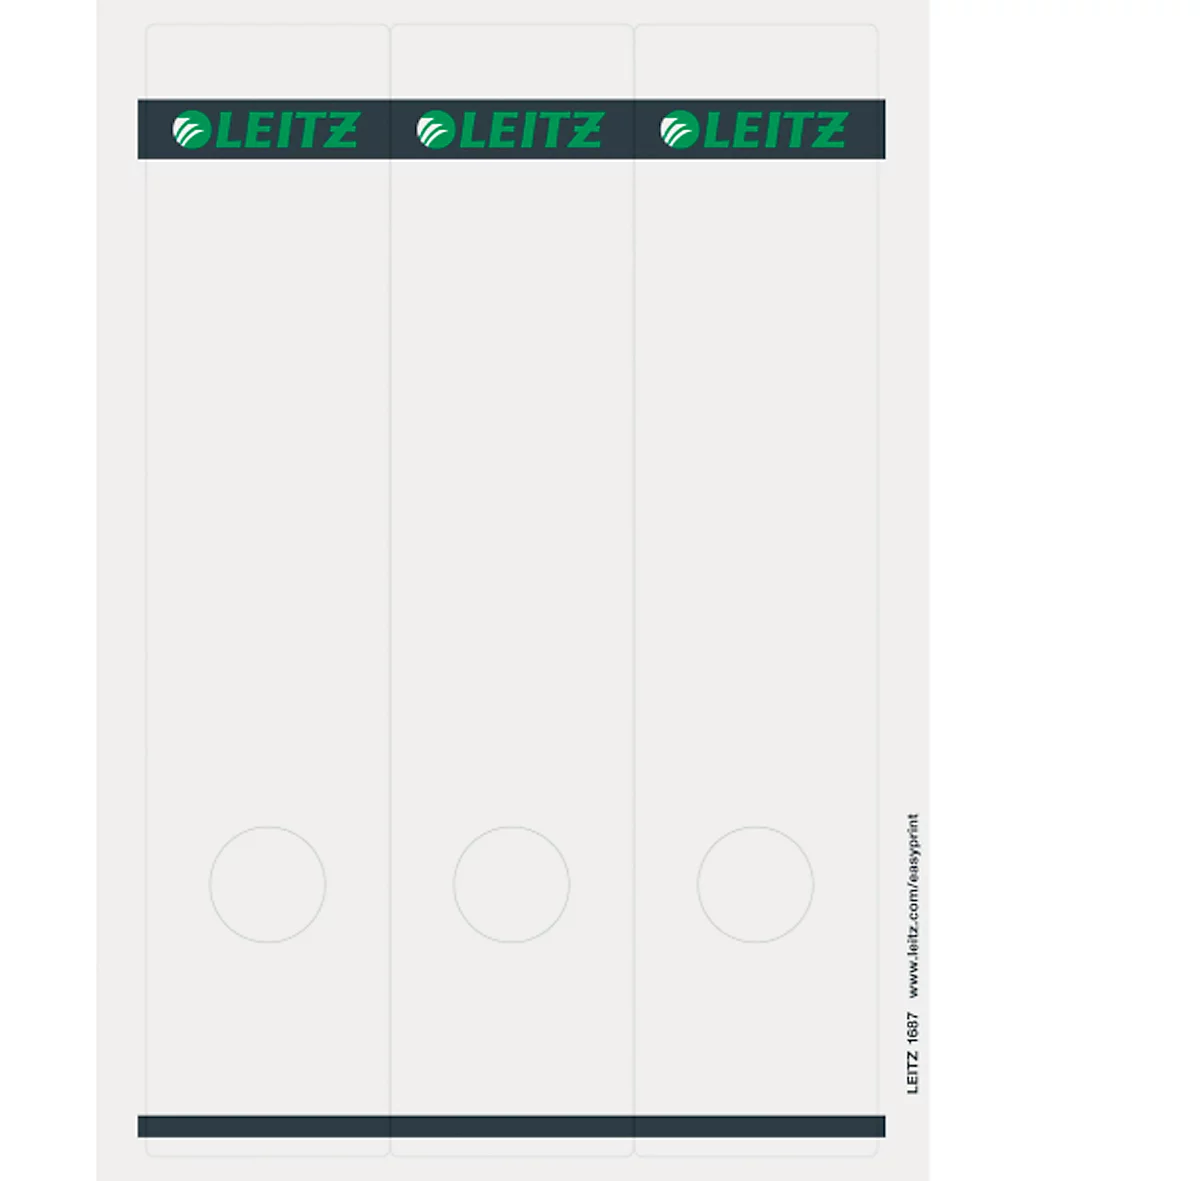 LEITZ® Rückenschilder lang, PC-beschriftbar, Rückenbreite 80 mm, selbstklebend 75 St., hellgrau